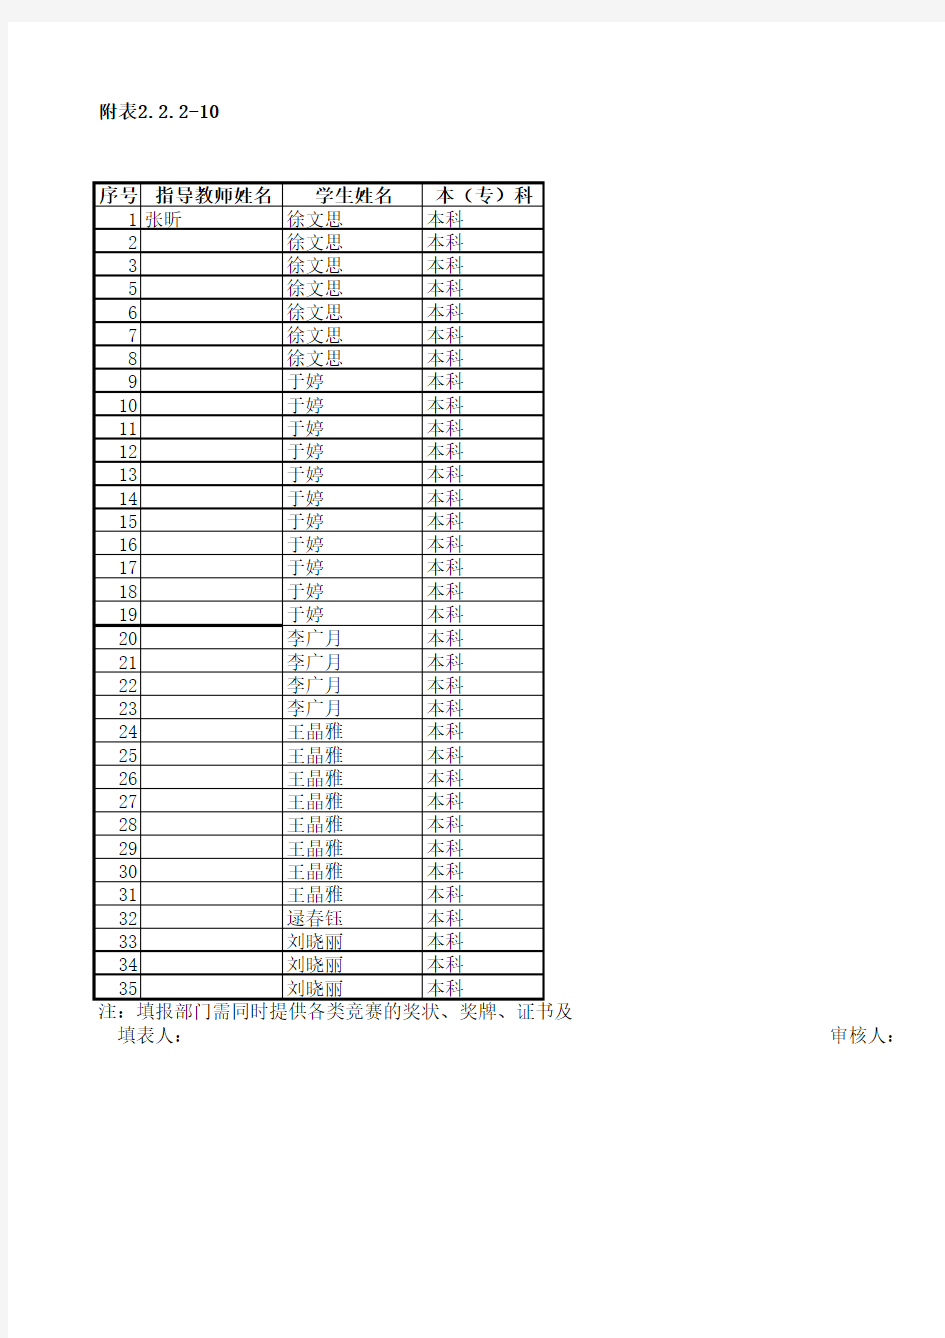 09401吉林工商学院学生参加技能竞赛统计表 2.2.2-10王杰